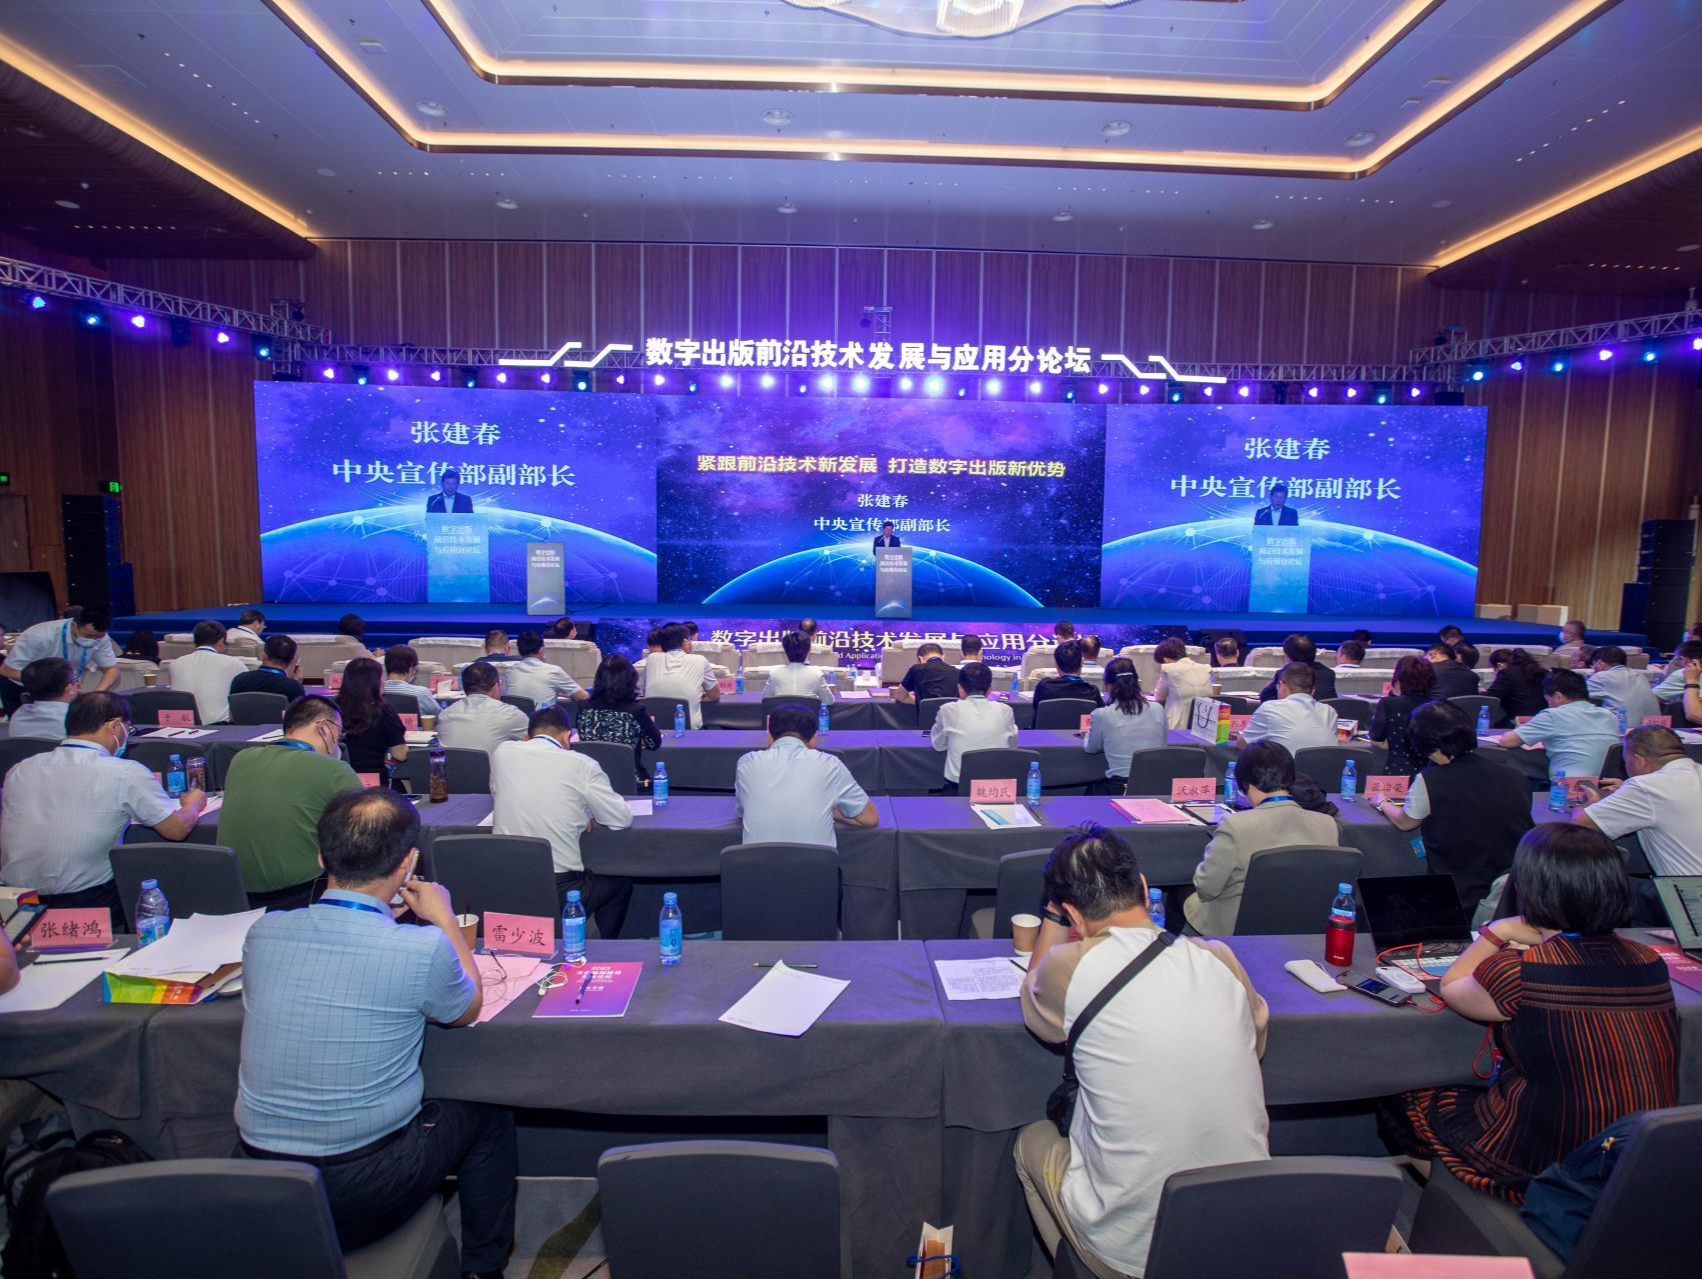 首届文化强国建设高峰论坛之数字出版前沿技术发展与应用分论坛在深圳举办